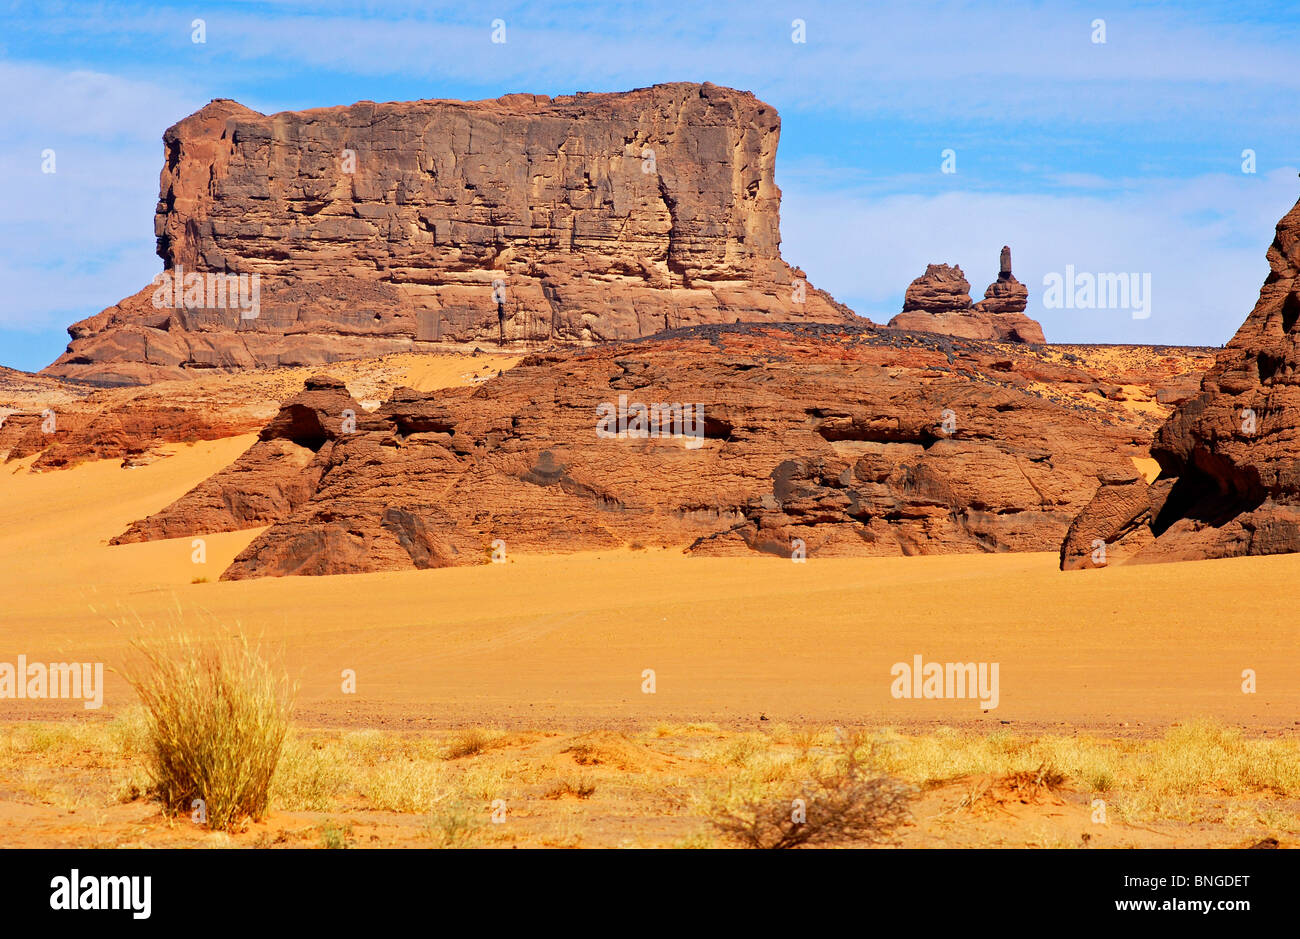 Eroded mountain stock, Acacus Mountains, Sahara desert, Libya Stock Photo